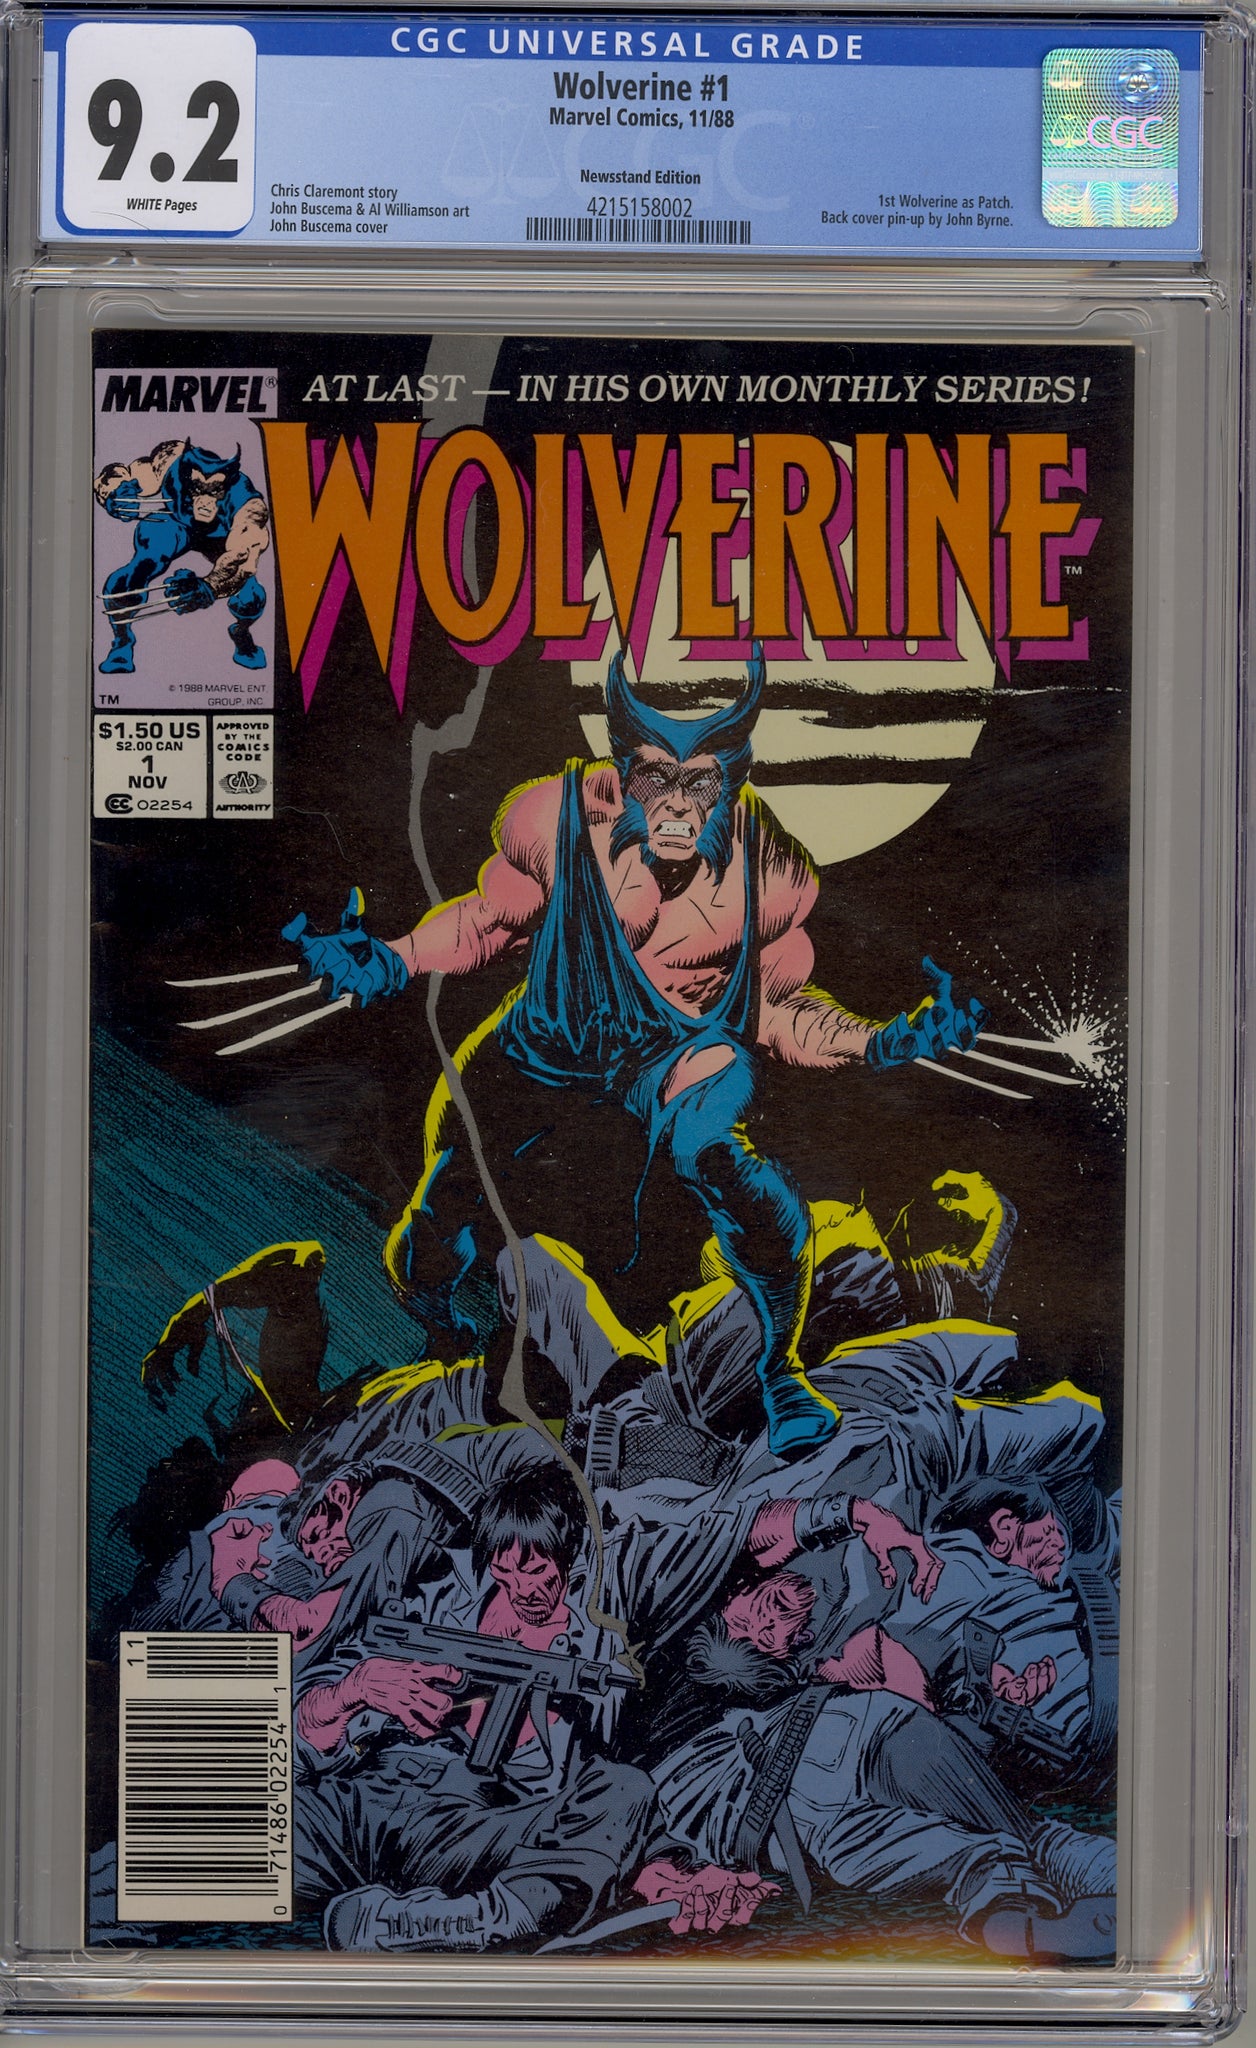 Wolverine #1 (1988) newsstand edition